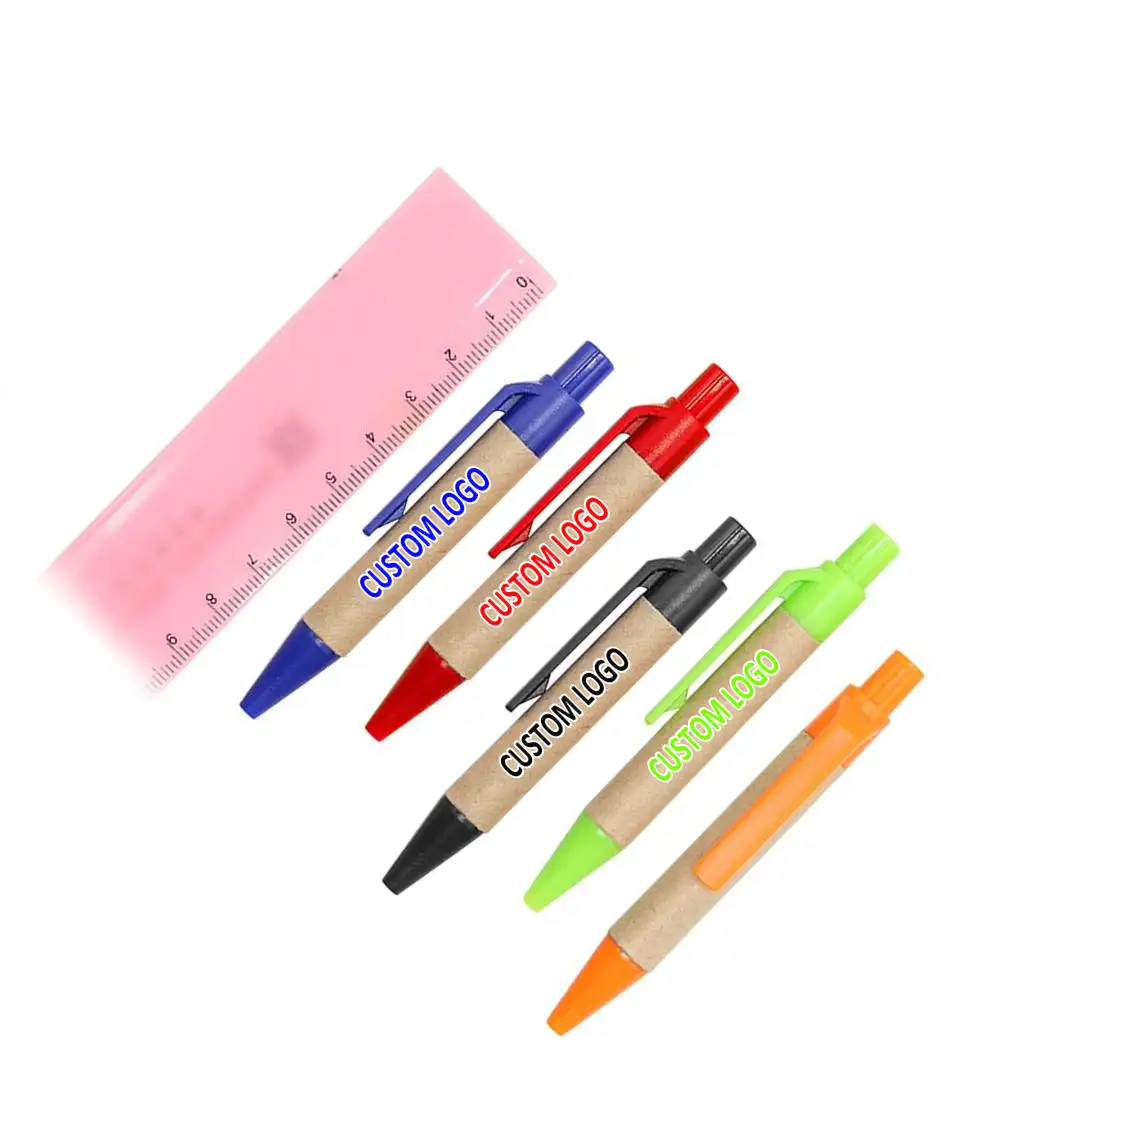 قلم حبر جاف قابل لإعادة الاستخدام قصير وصغير الحجم بطول 9 سنتيمتر مخصص مع طباعة شعار شركة مخصصة